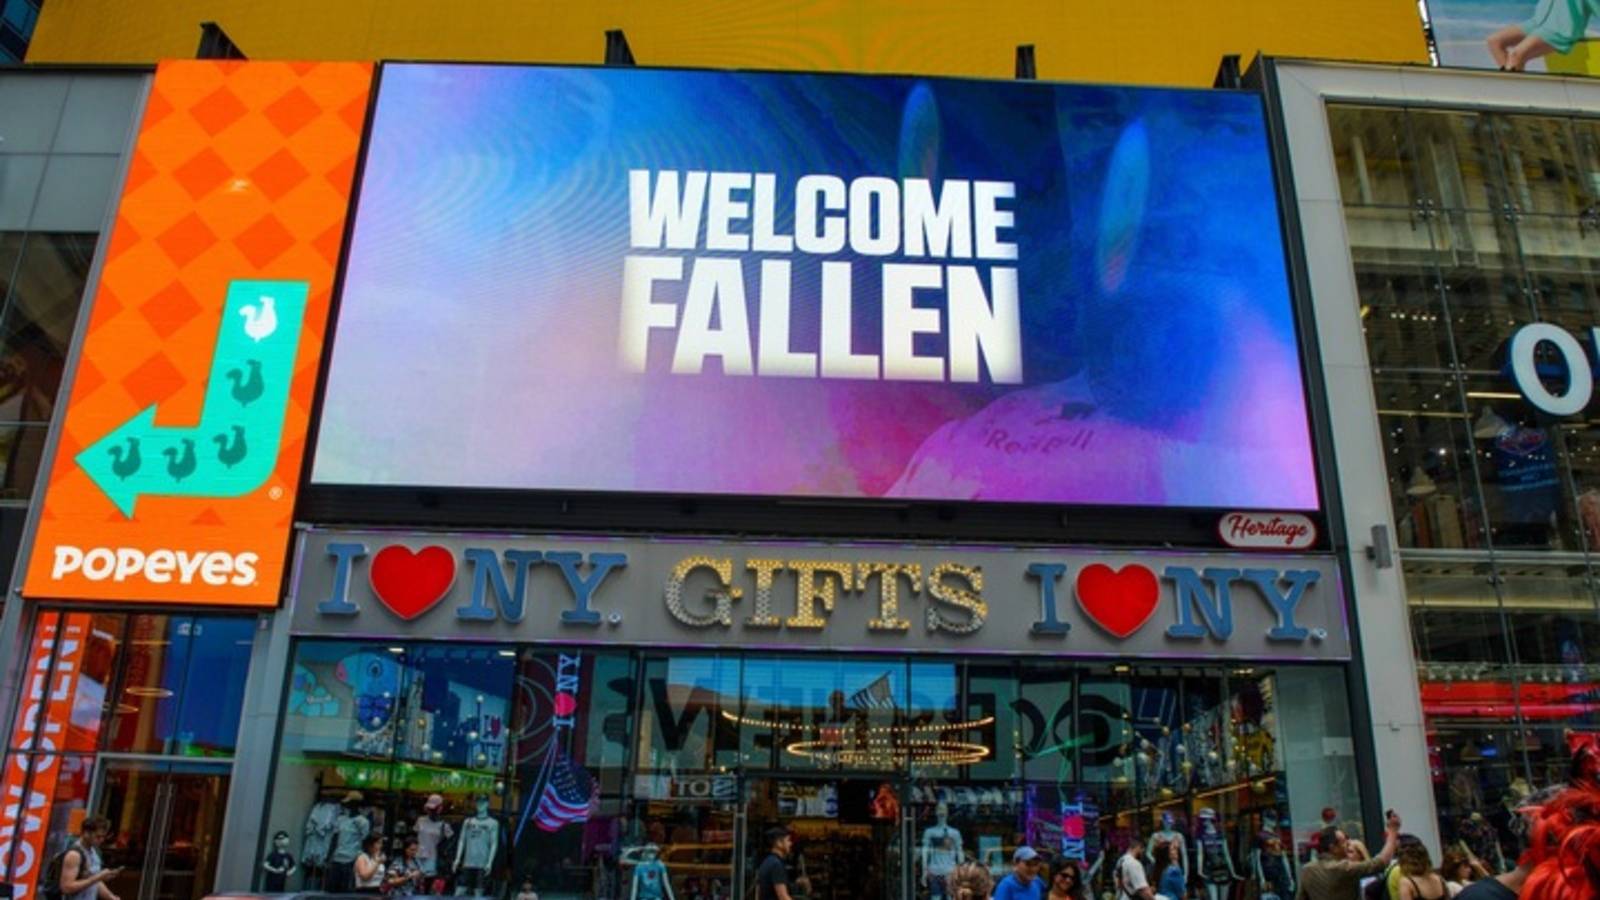 Fallen Furia ad in Times Square